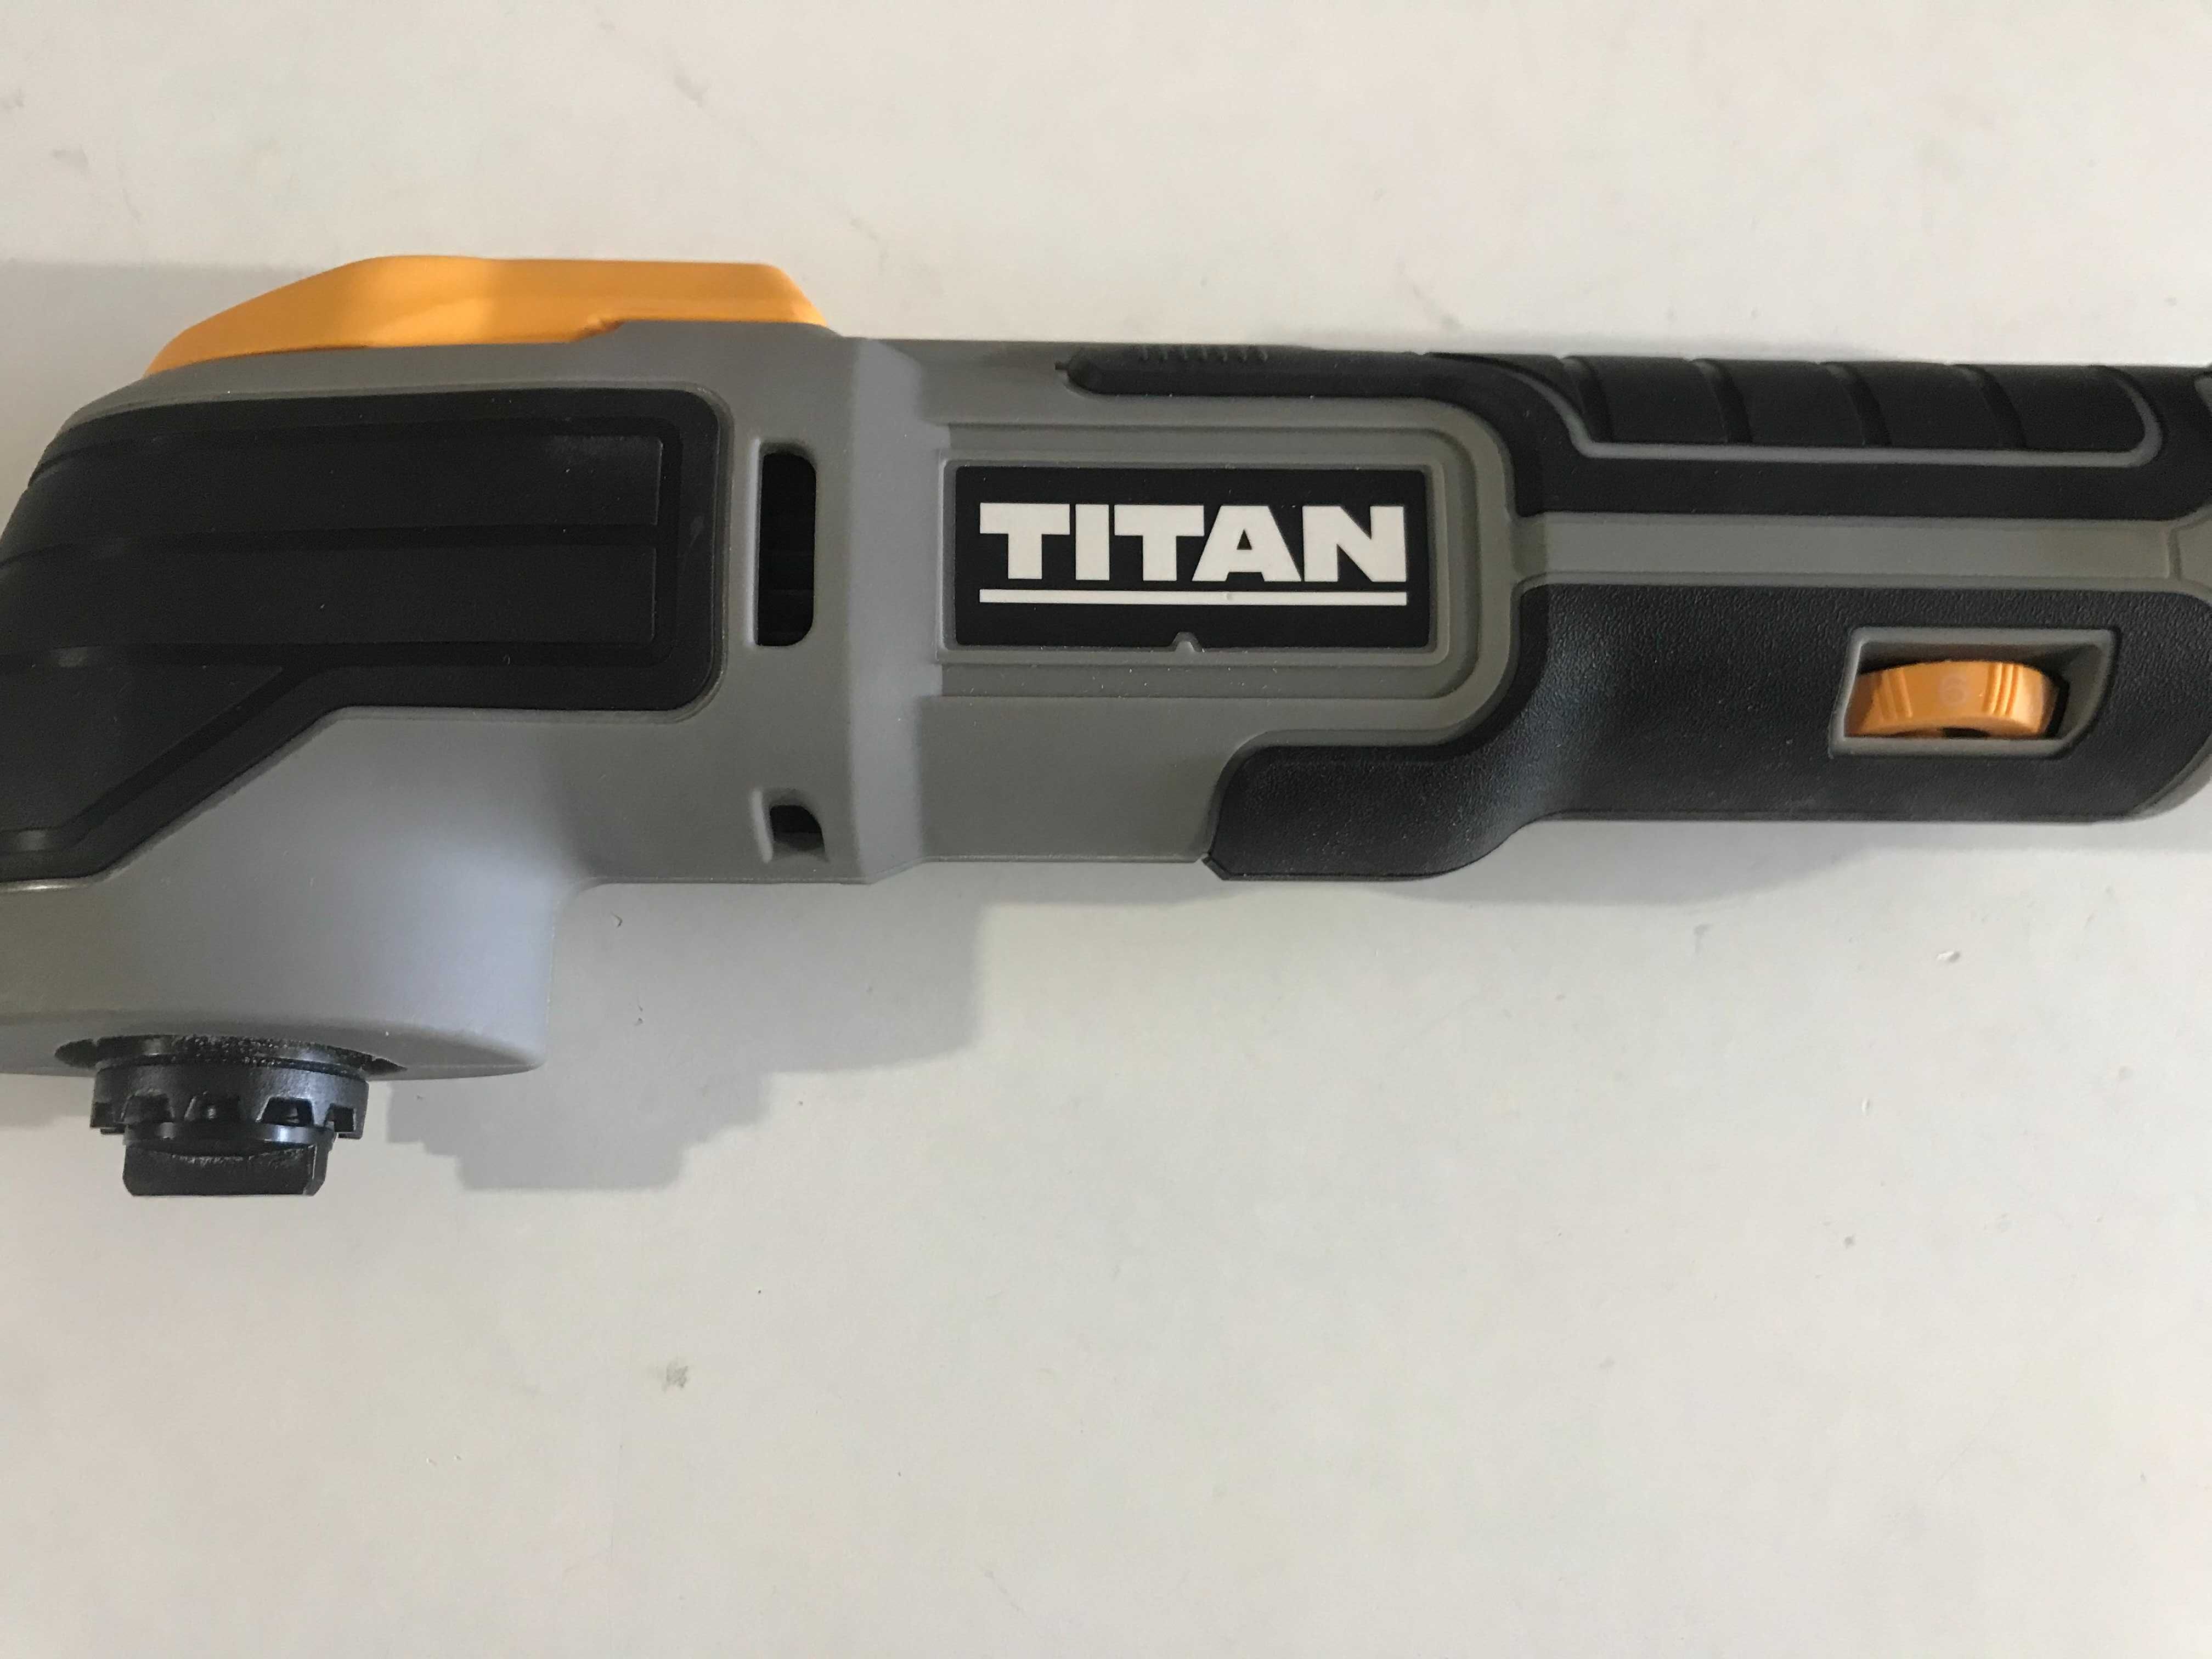 Акумуляторний багатофункціональний інструмент TITAN TTI882MLT з Англії